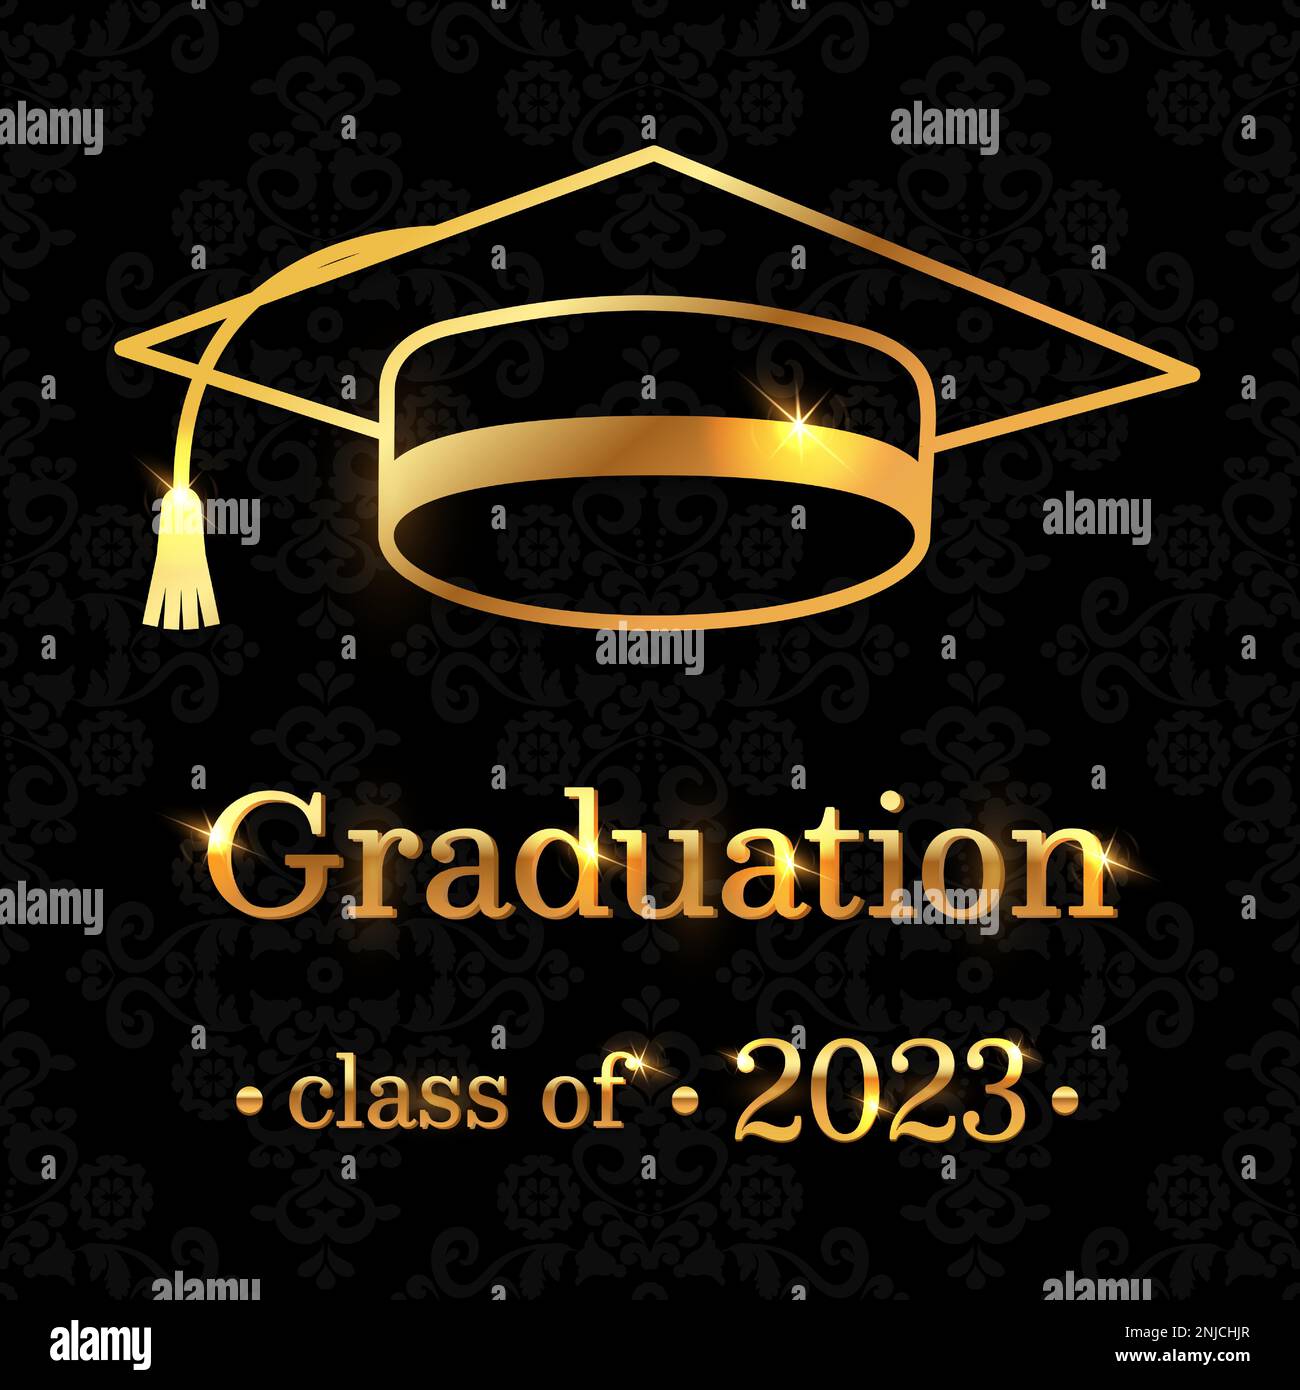 Célébrez le grand jour avec style avec cette élégante carte de remise de diplômes ornée d'un chapeau de graduation doré et d'un texte festif sur un élégant motif gris foncé Illustration de Vecteur